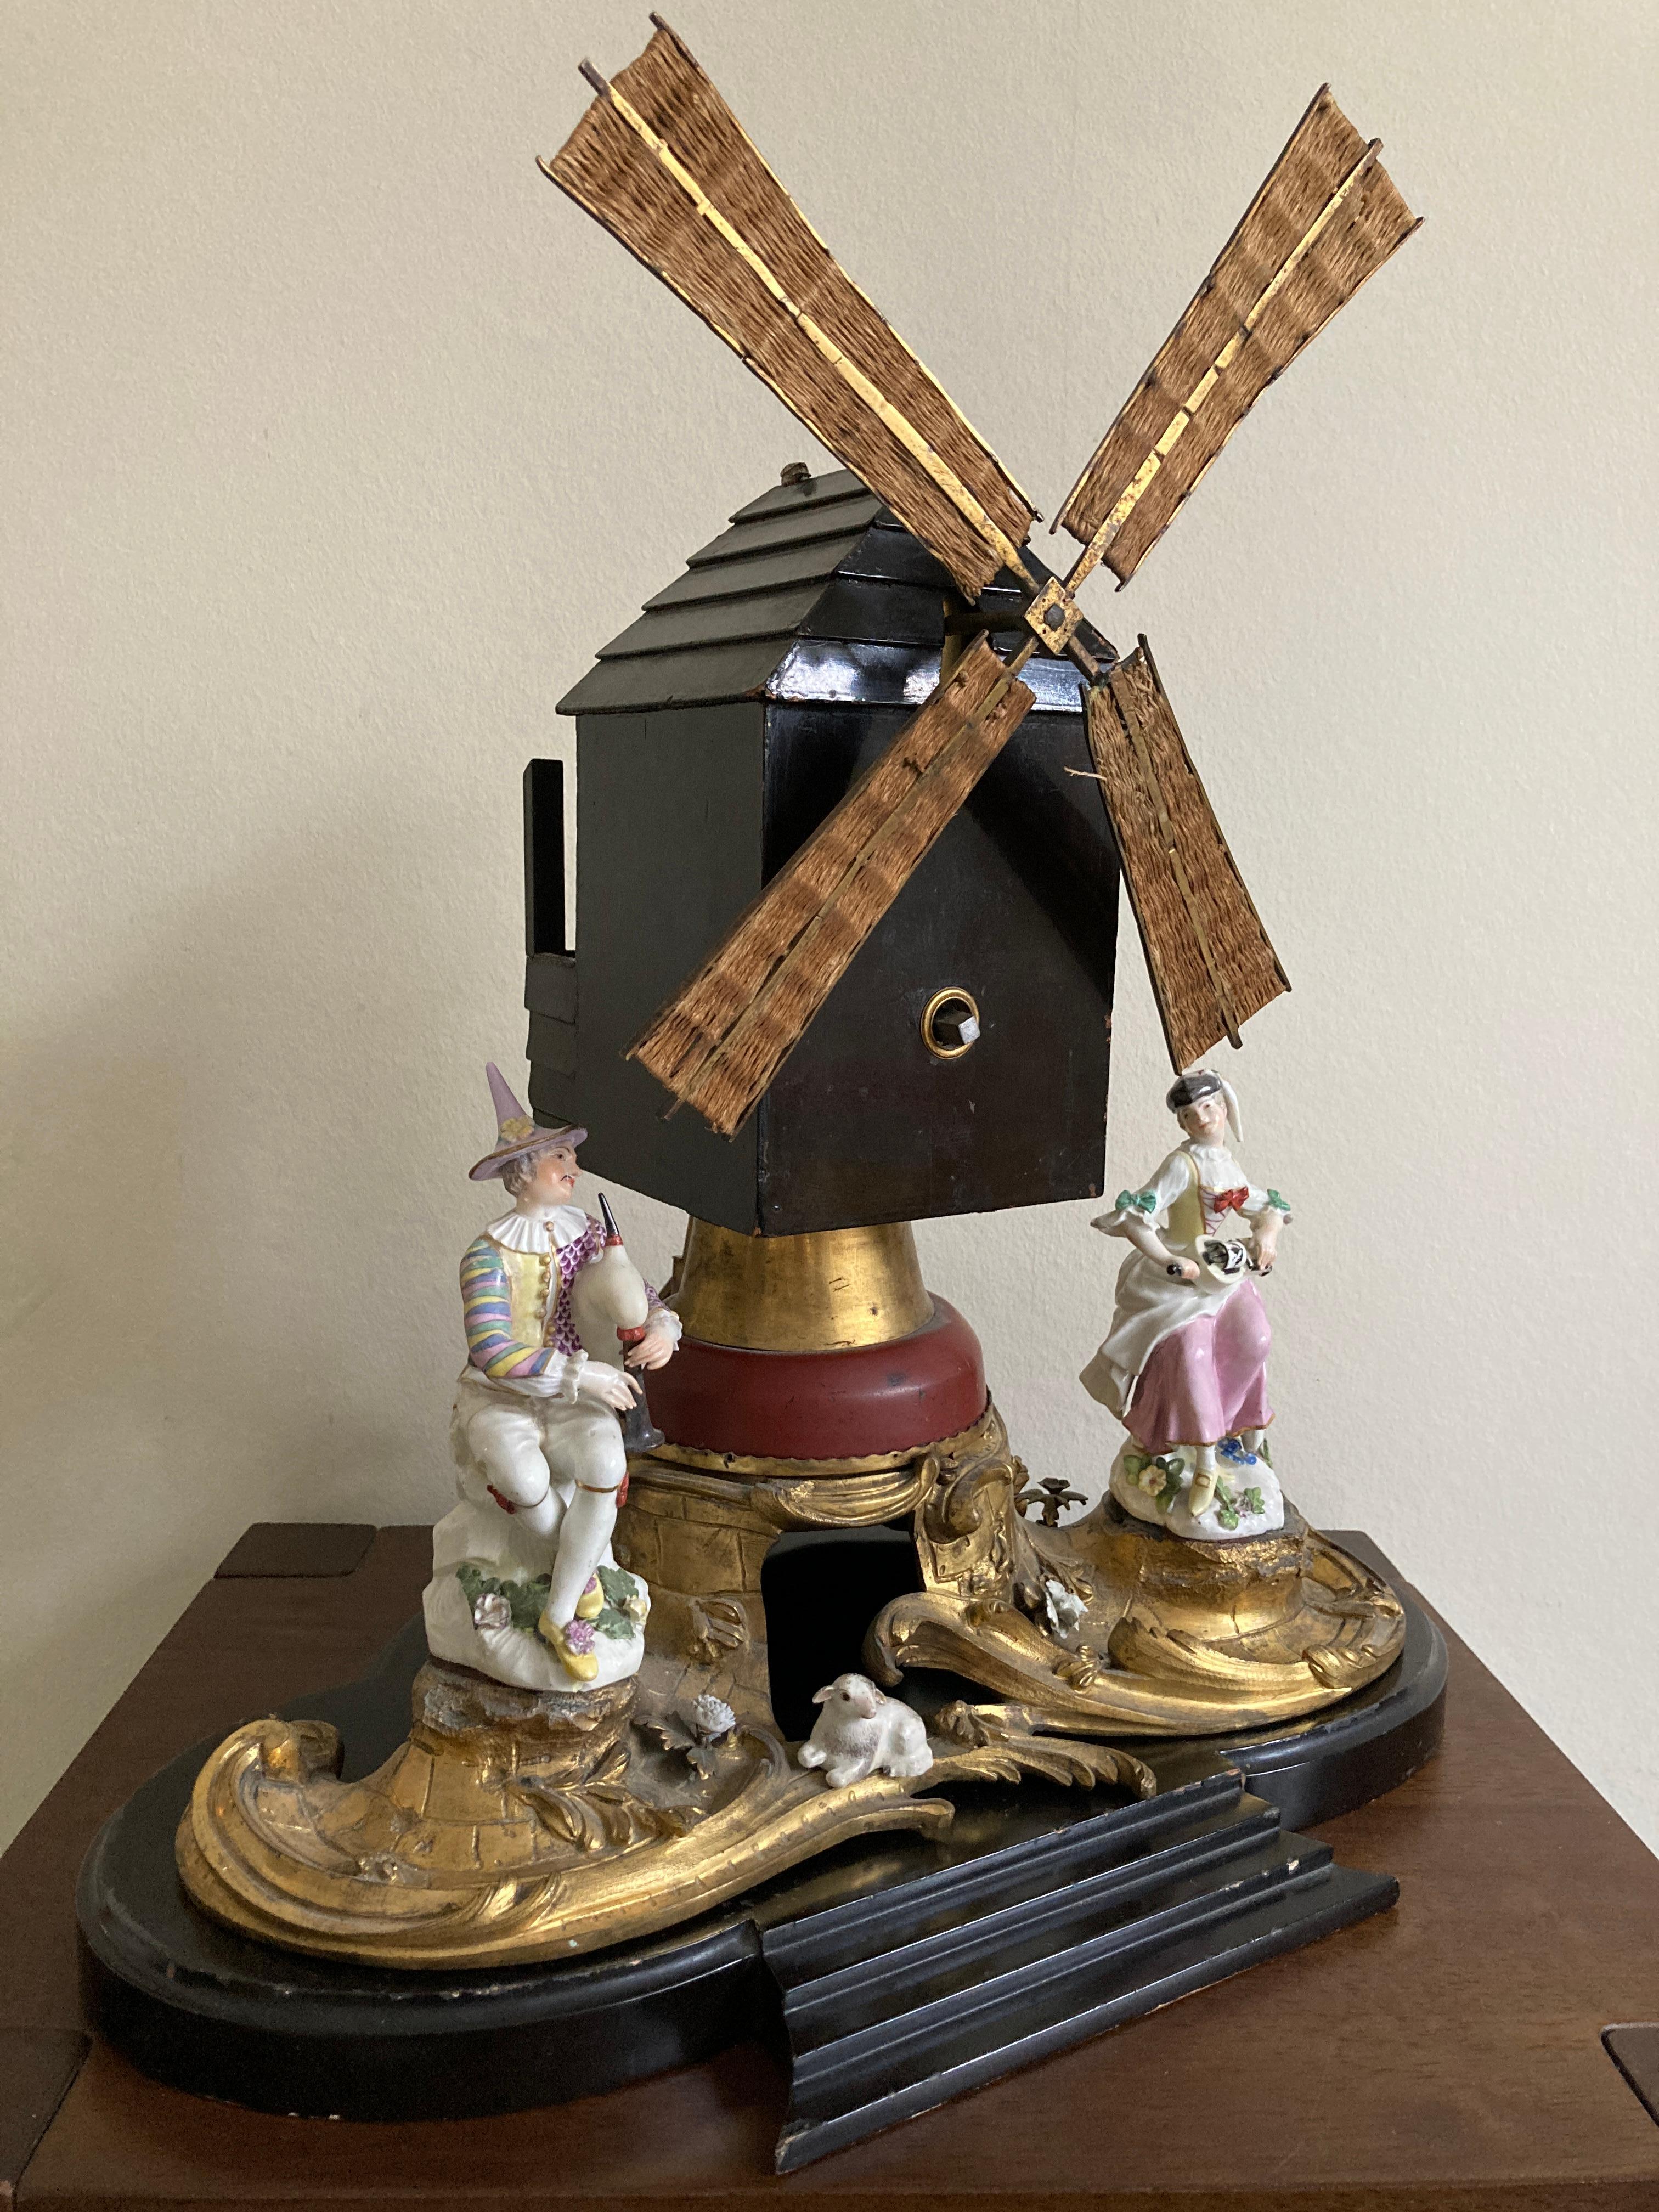 Windmühle aus der Zeit Ludwigs XV., verziert mit 2 Figuren aus Meissener Porzellan und vergoldeter Bronze.

Das Uhrwerk der Mühle ist innen signiert 